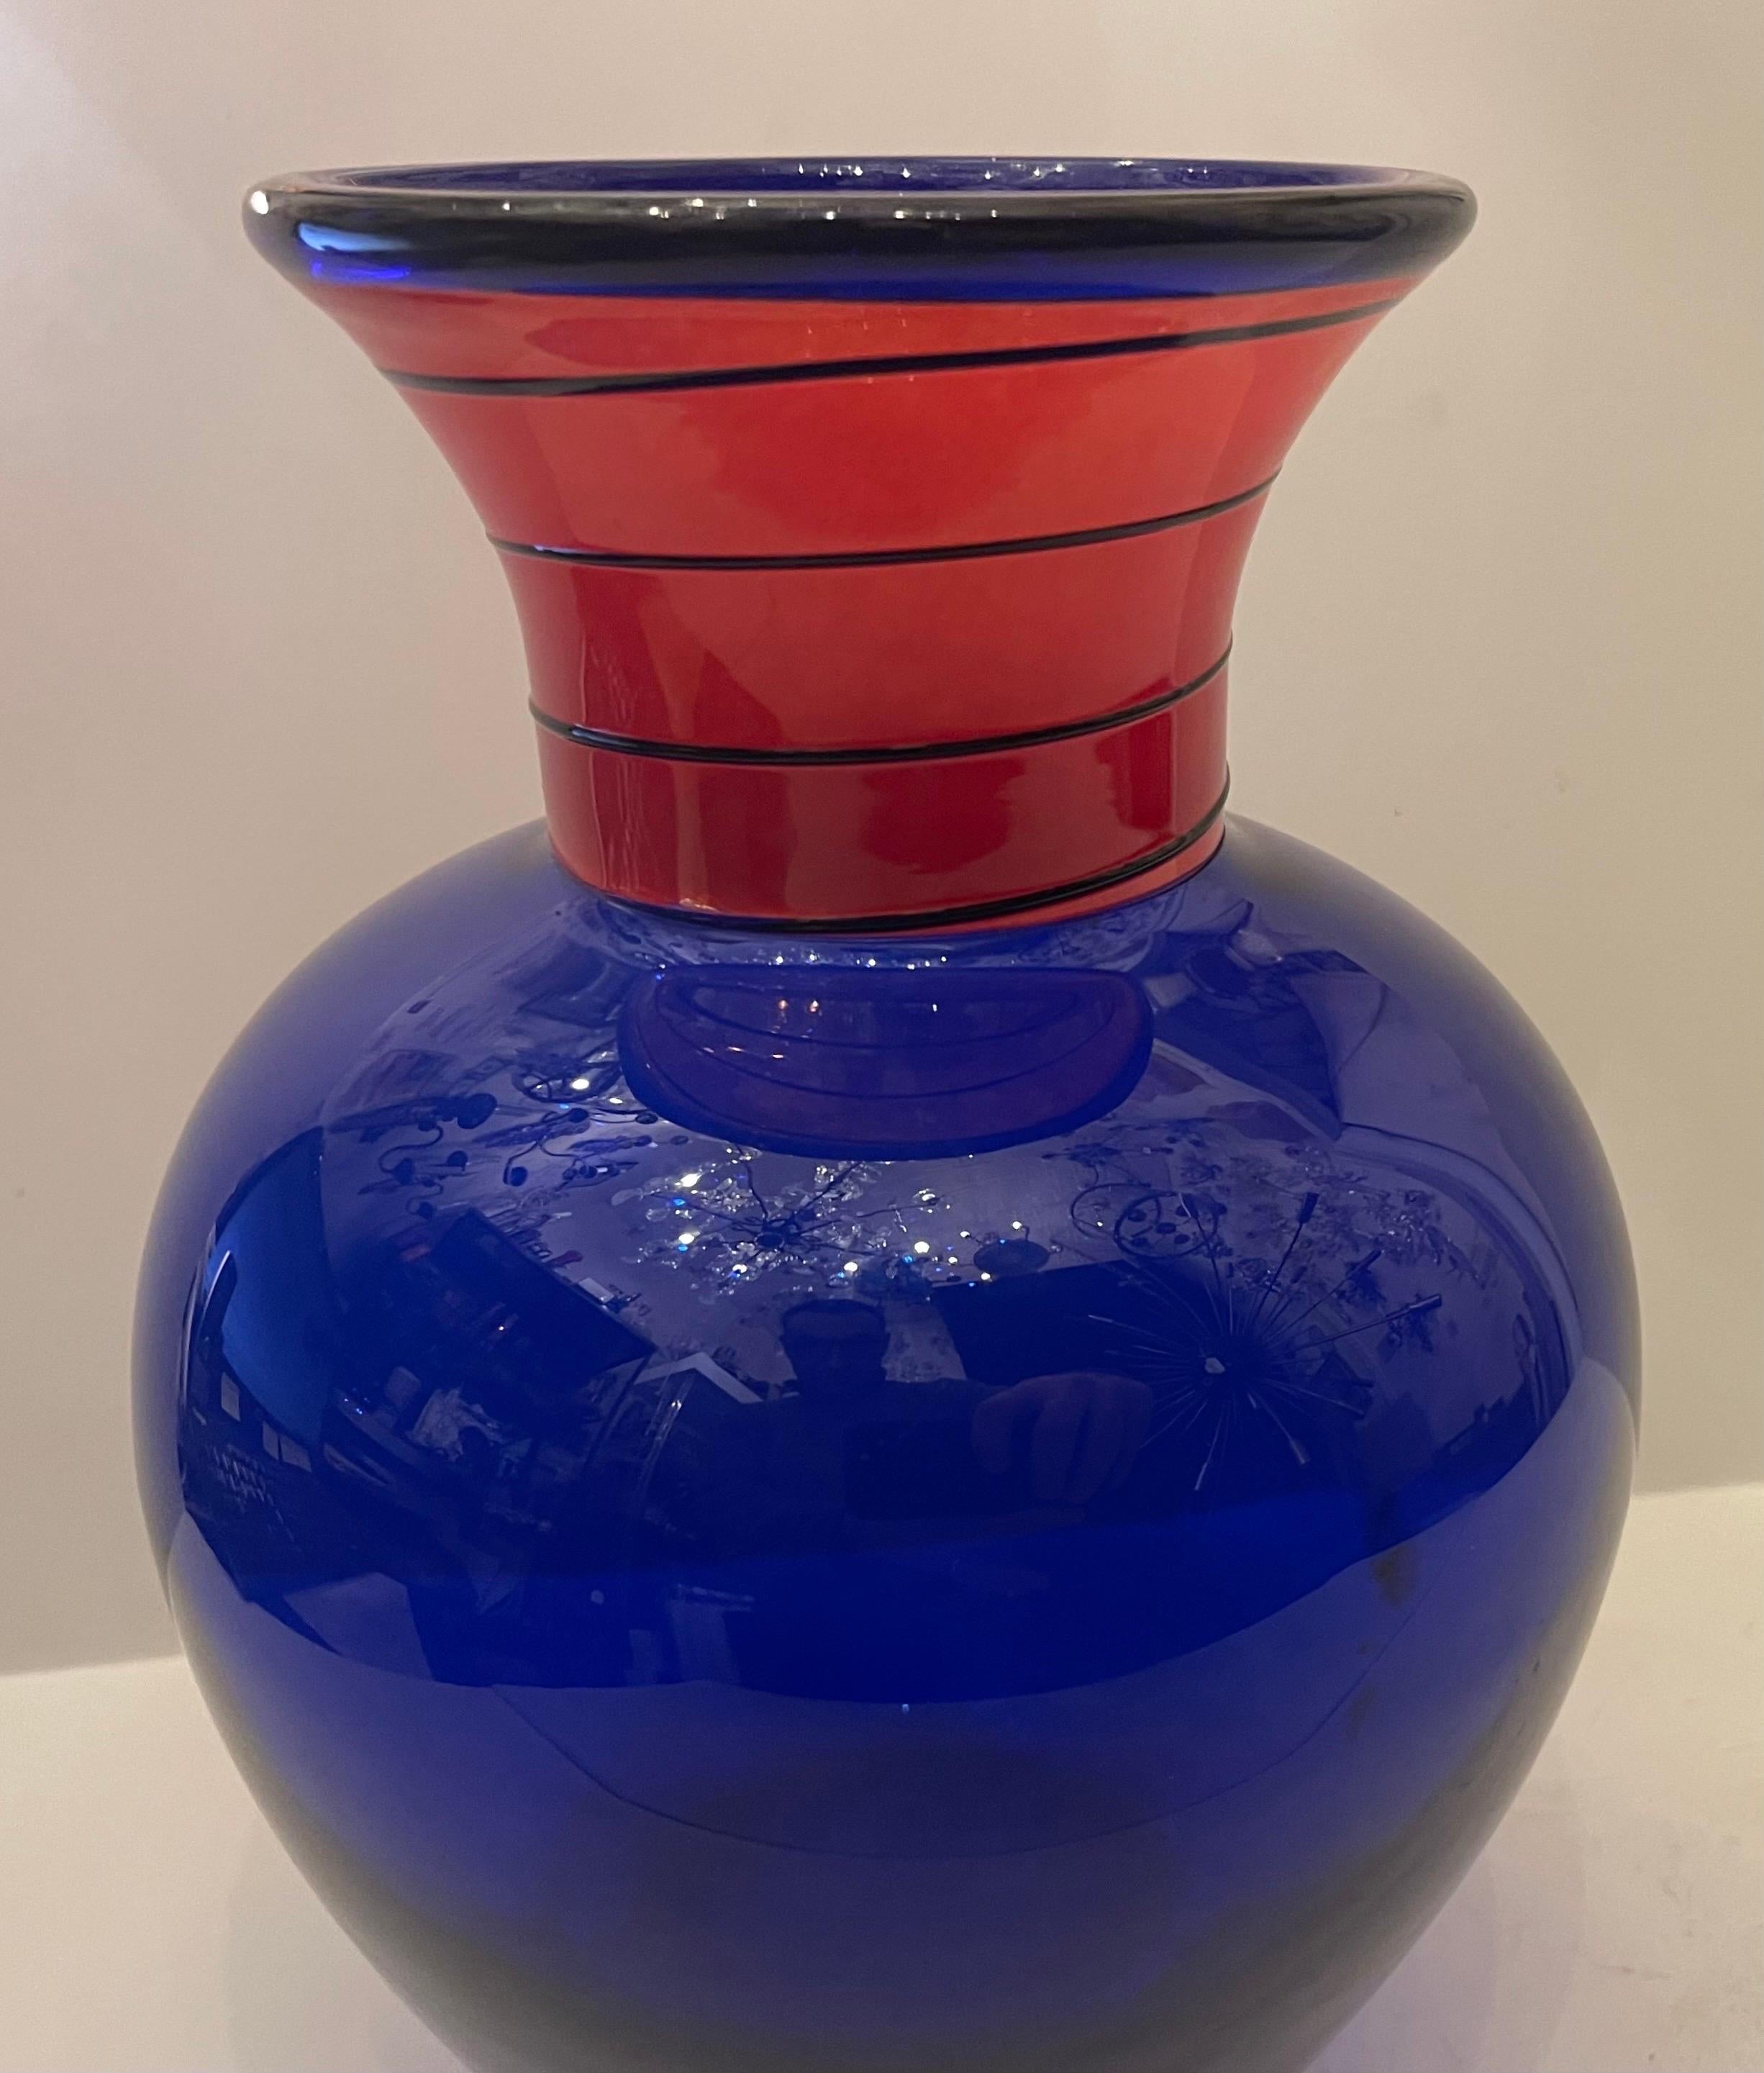 Un merveilleux vase signé B.A.G Barovier & Toso en verre d'art de la République Tchèque.
Sur le dessous du vase, on peut lire 